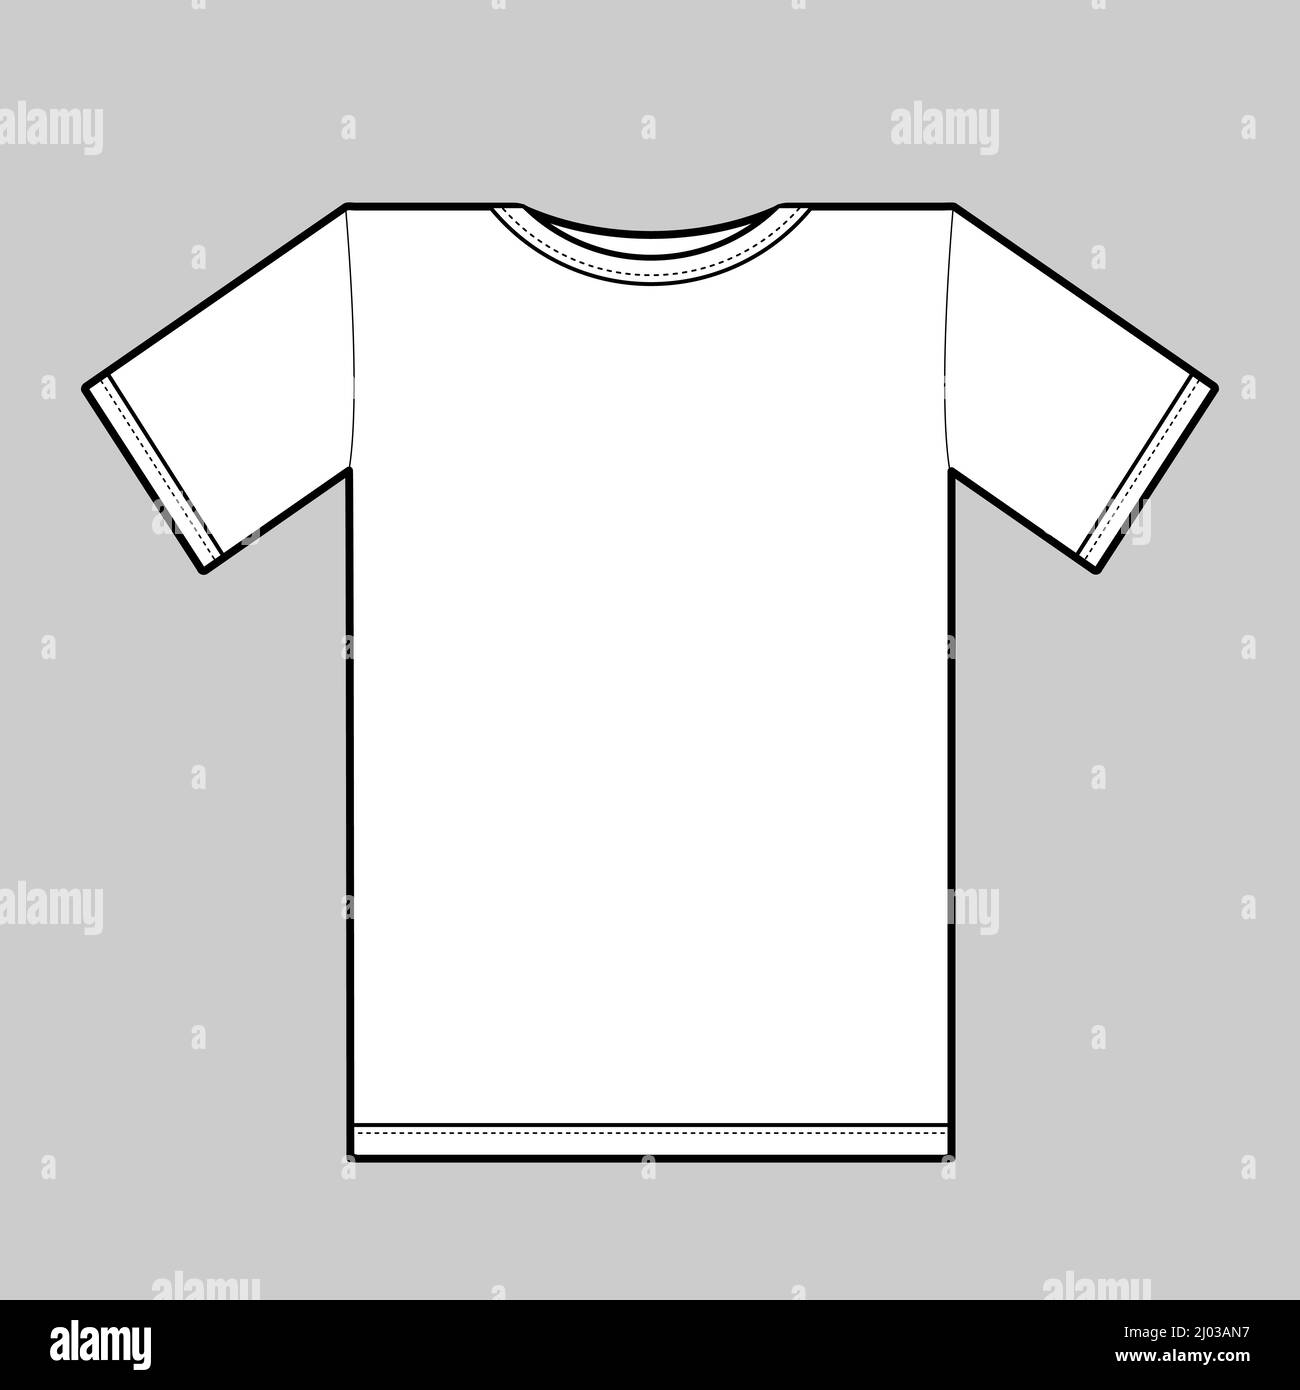 gray tshirt template